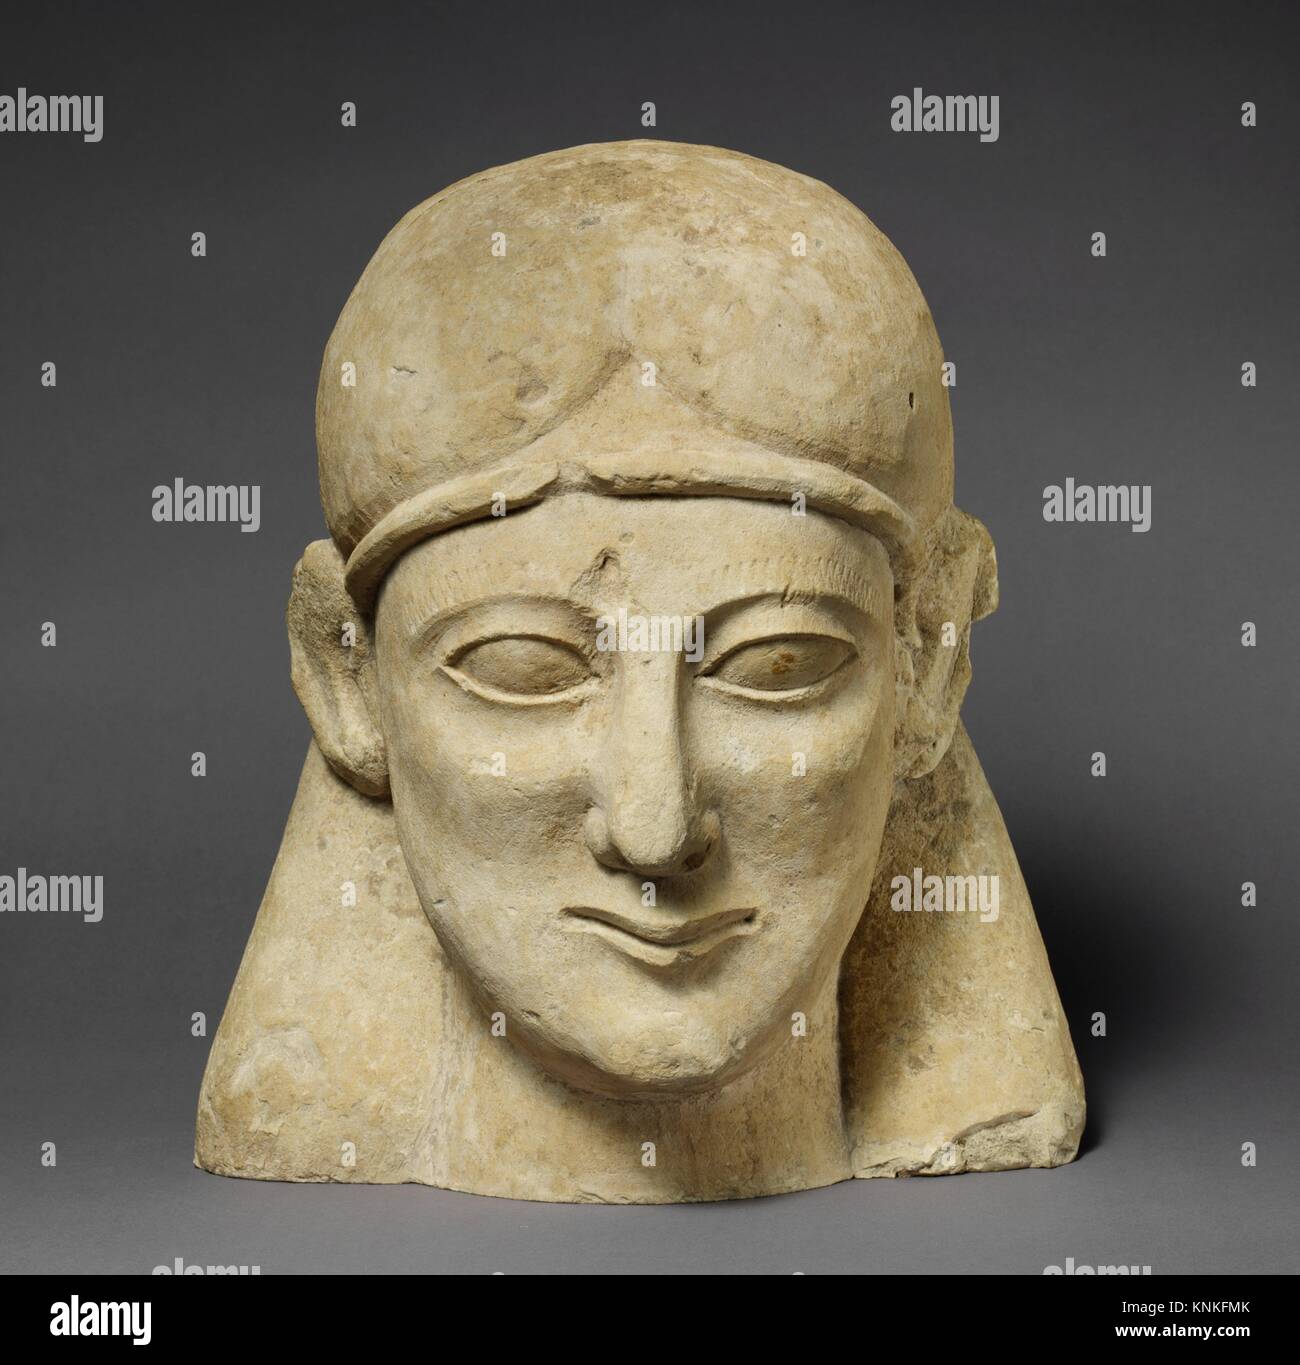 Testa di pietra calcarea di un rasa maschio con un filetto. Periodo: arcaica; Data: prima metà del VI secolo a.C; Cultura:; cipriota medie: calcare; Foto Stock